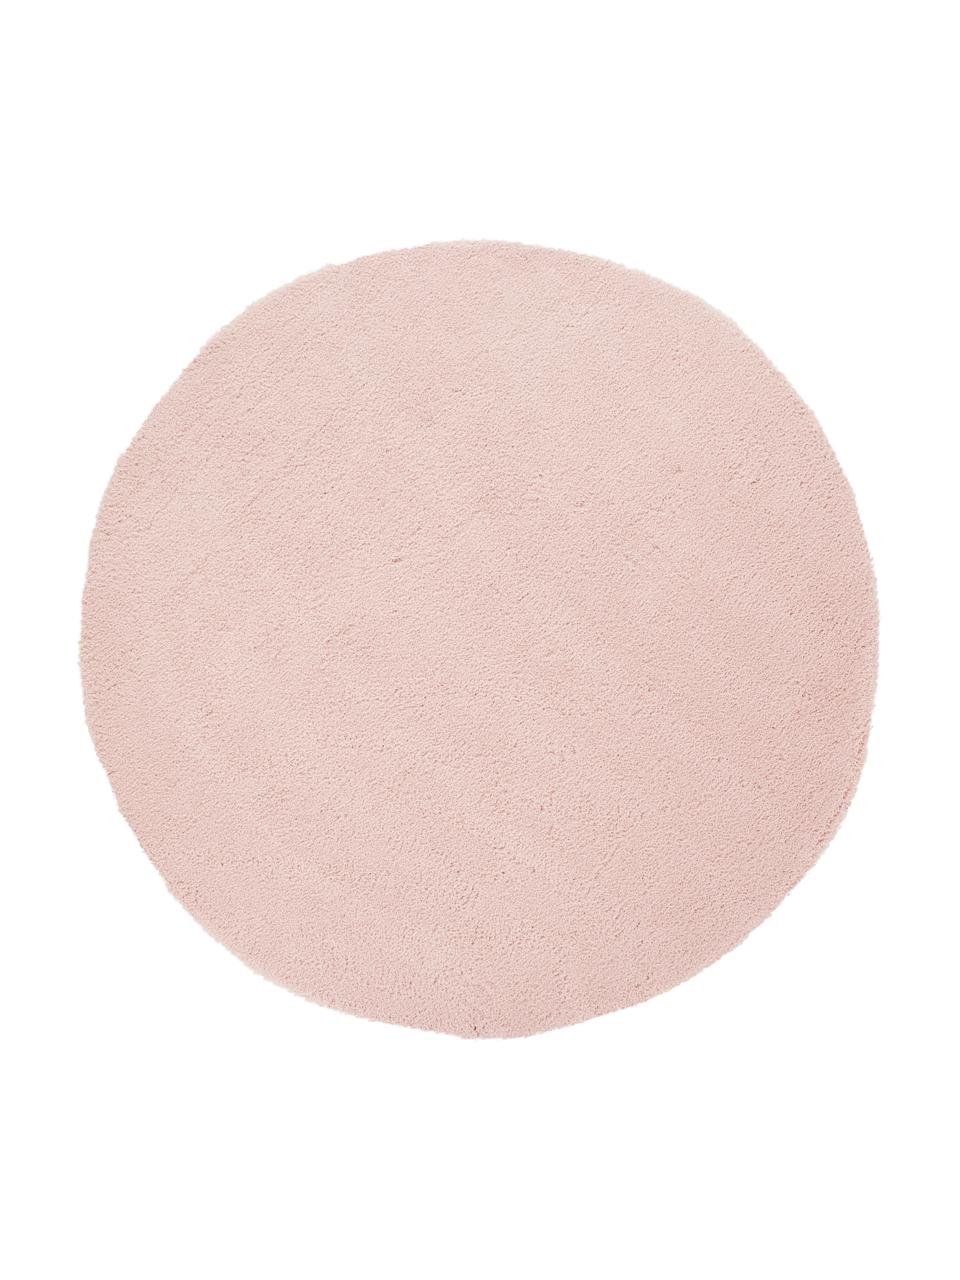 Nadýchaný kulatý koberec s vysokým vlasem Leighton, Růžová, Ø 200 cm (velikost L)